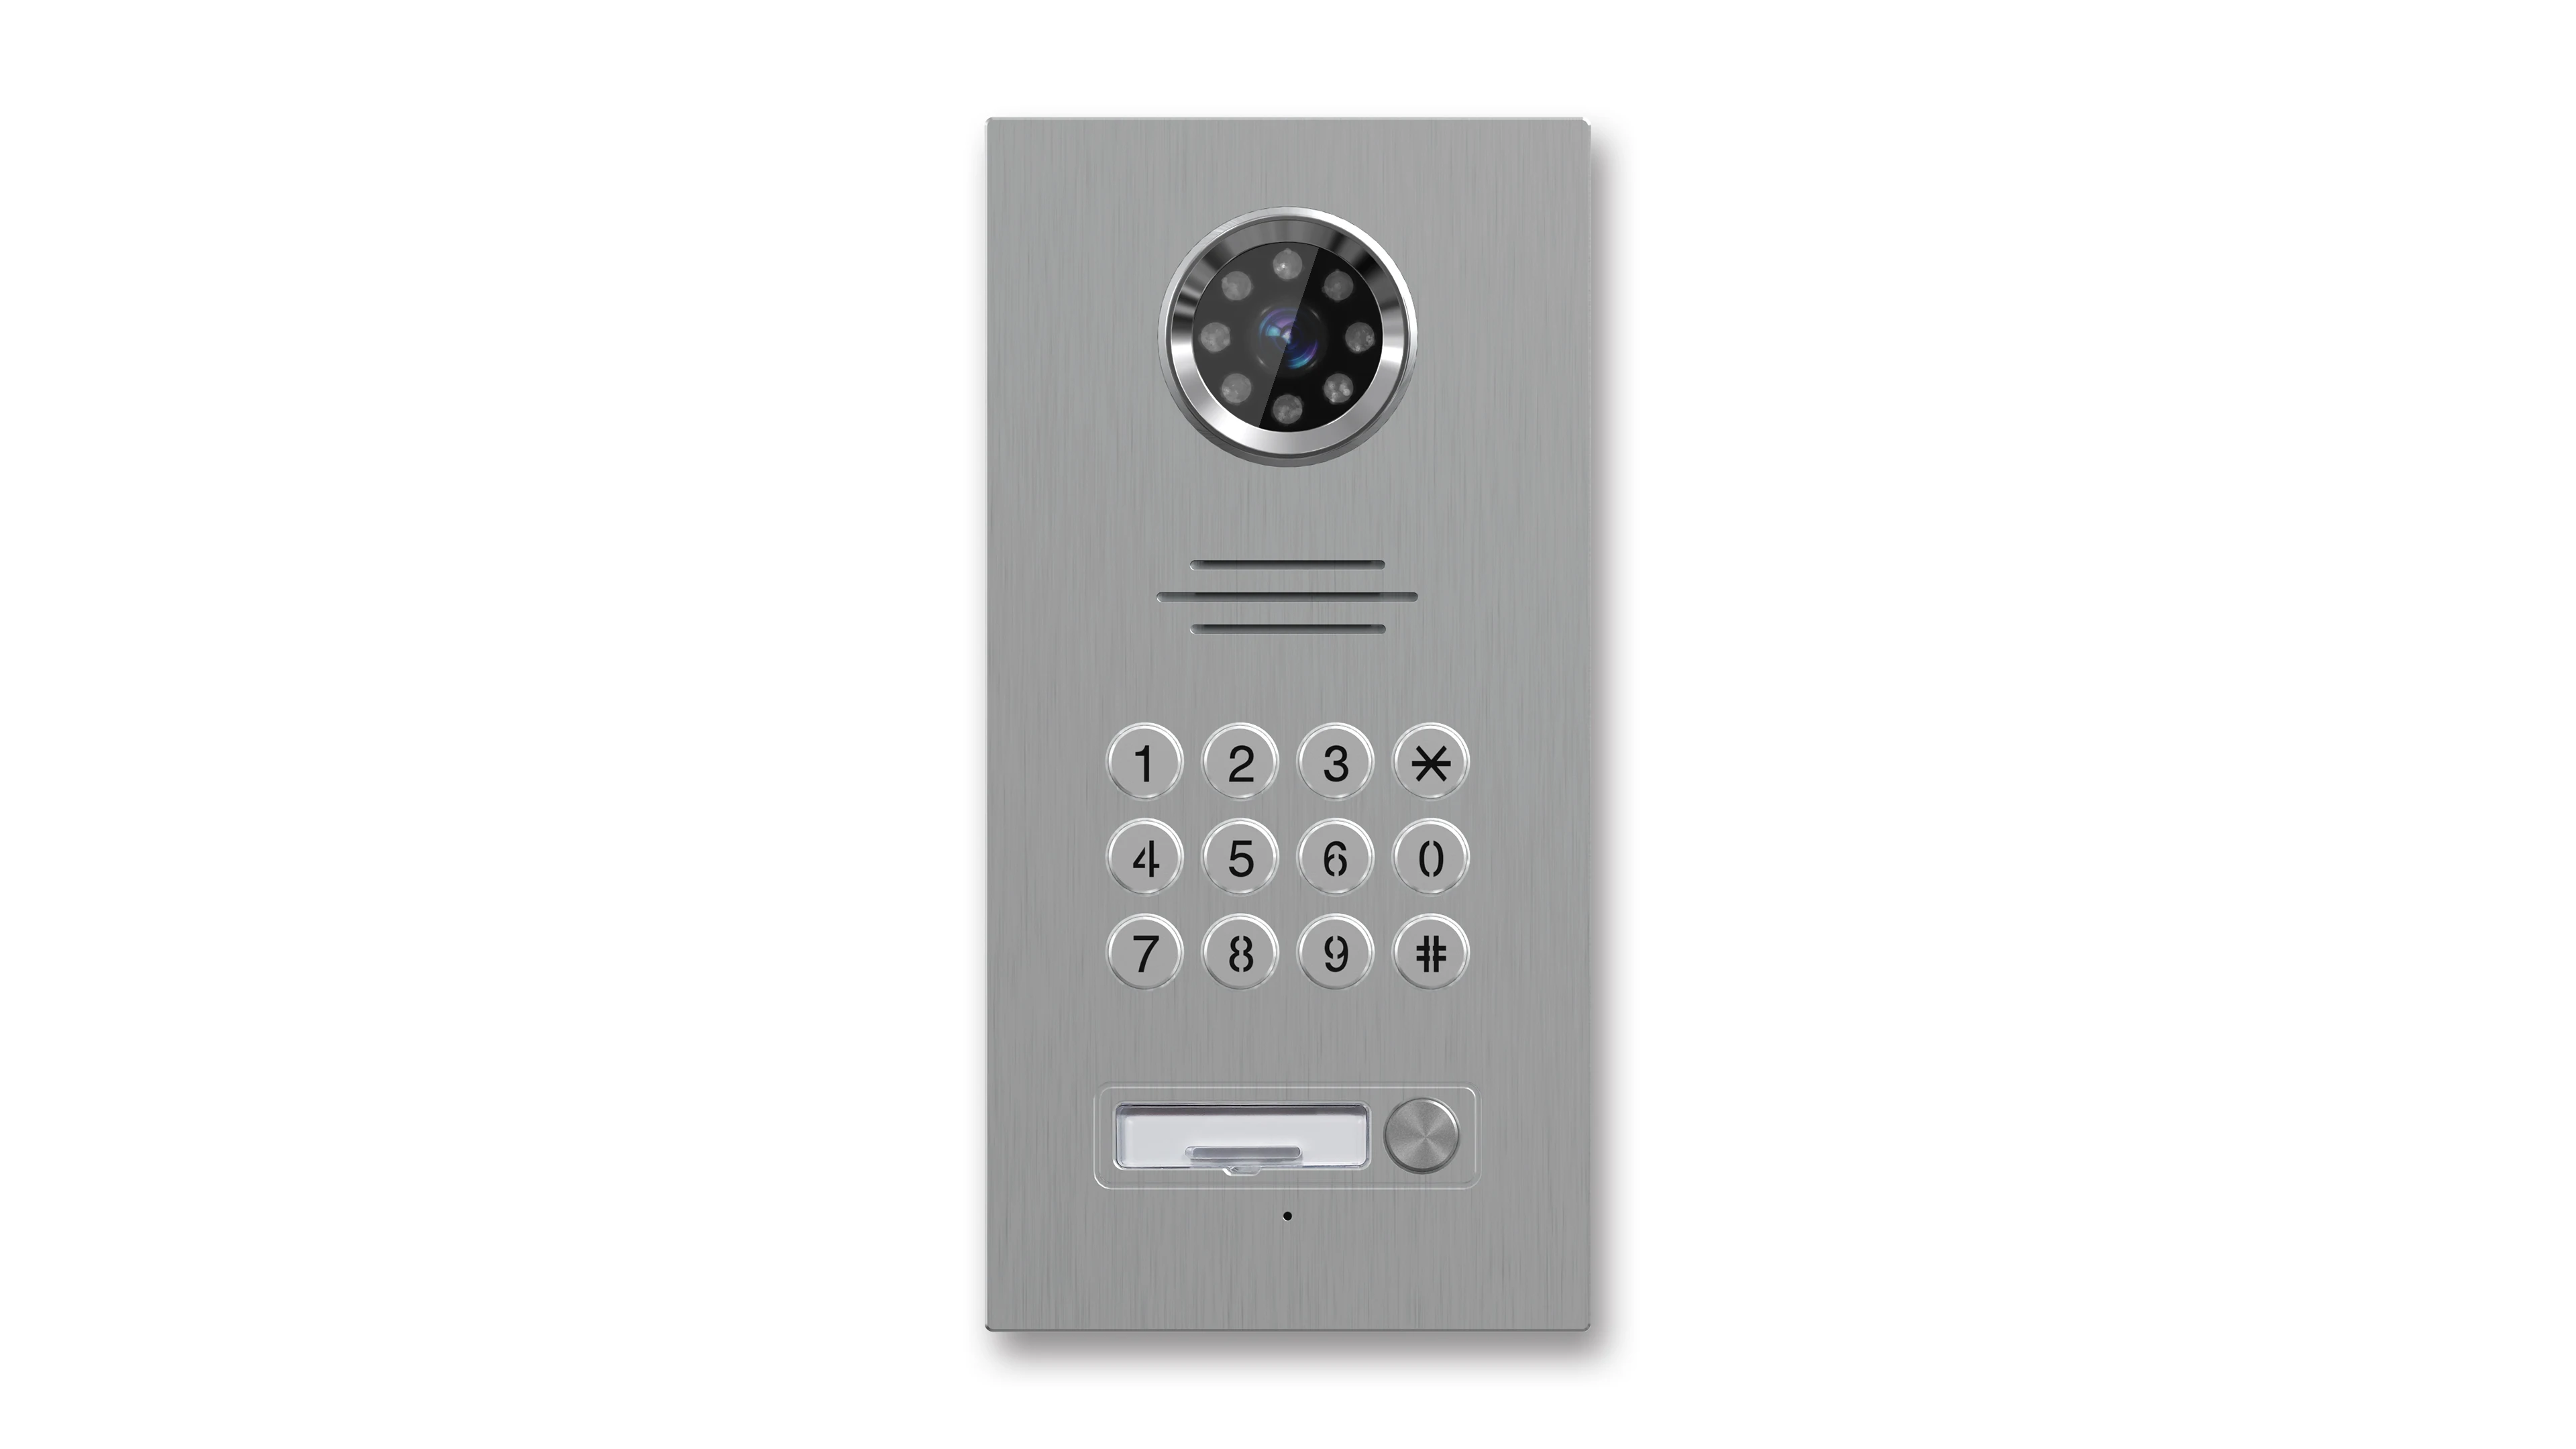 Tuya Intercom 8 inch Color Video Door Phone With Mobile App Unlock Function For Villa Unlocked Monitor Video Door Bell enlarge